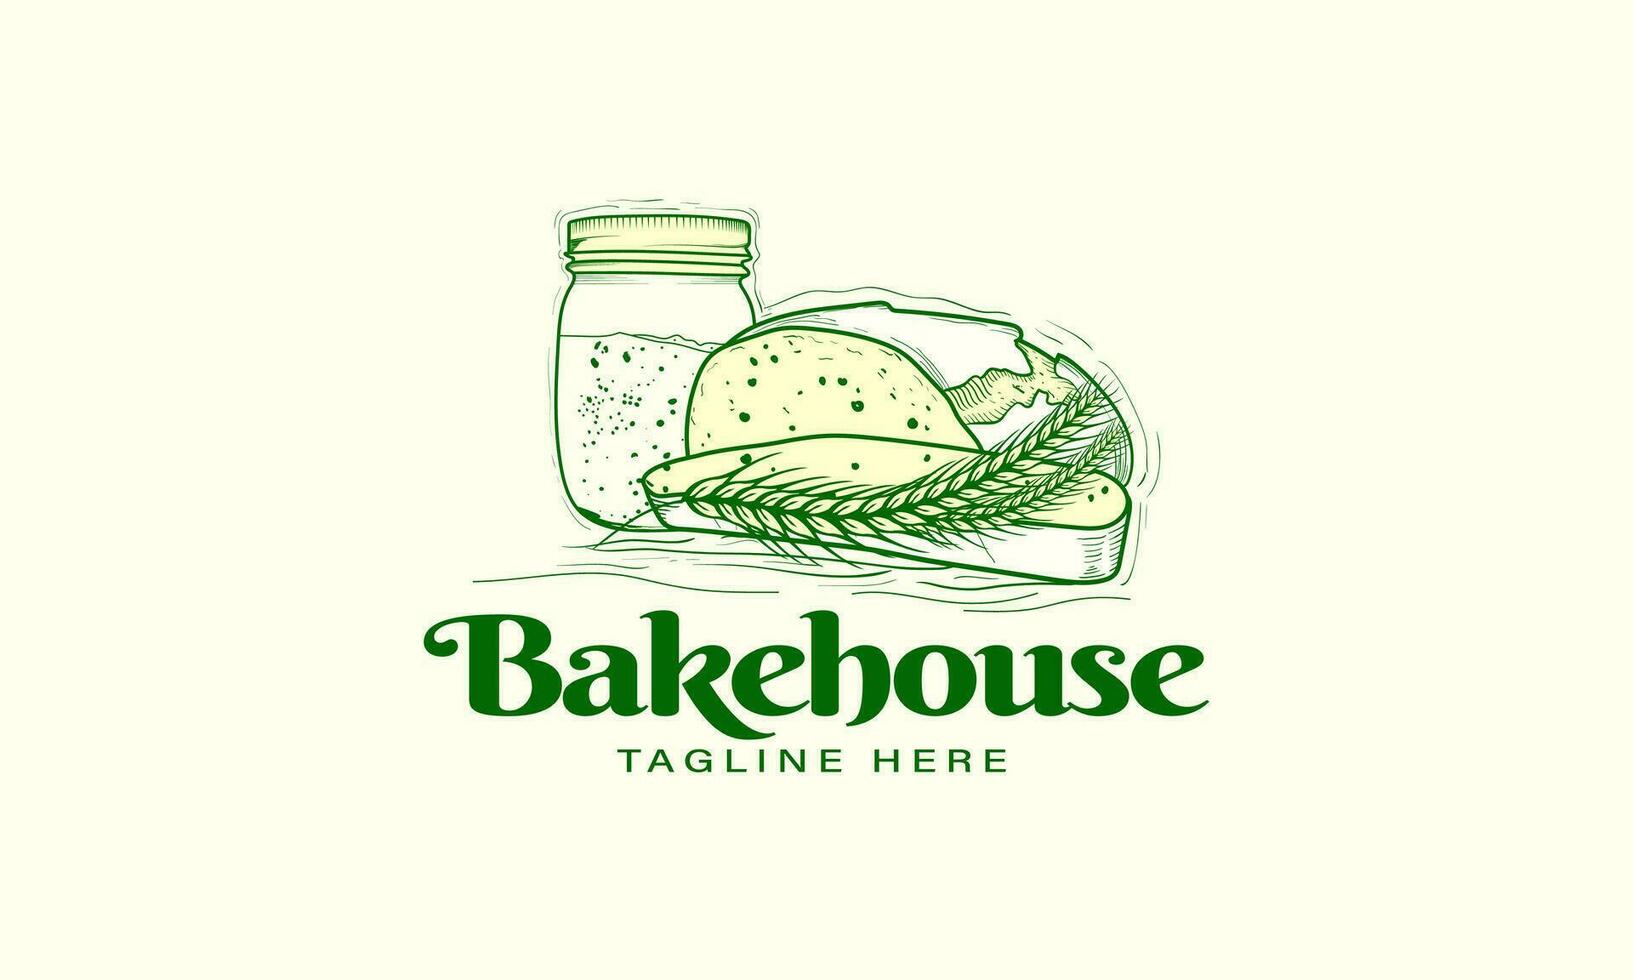 Bakery logo template. Bakehouse label or logo. Logo for bakery shop, bakery, restaurant. Vector illustration